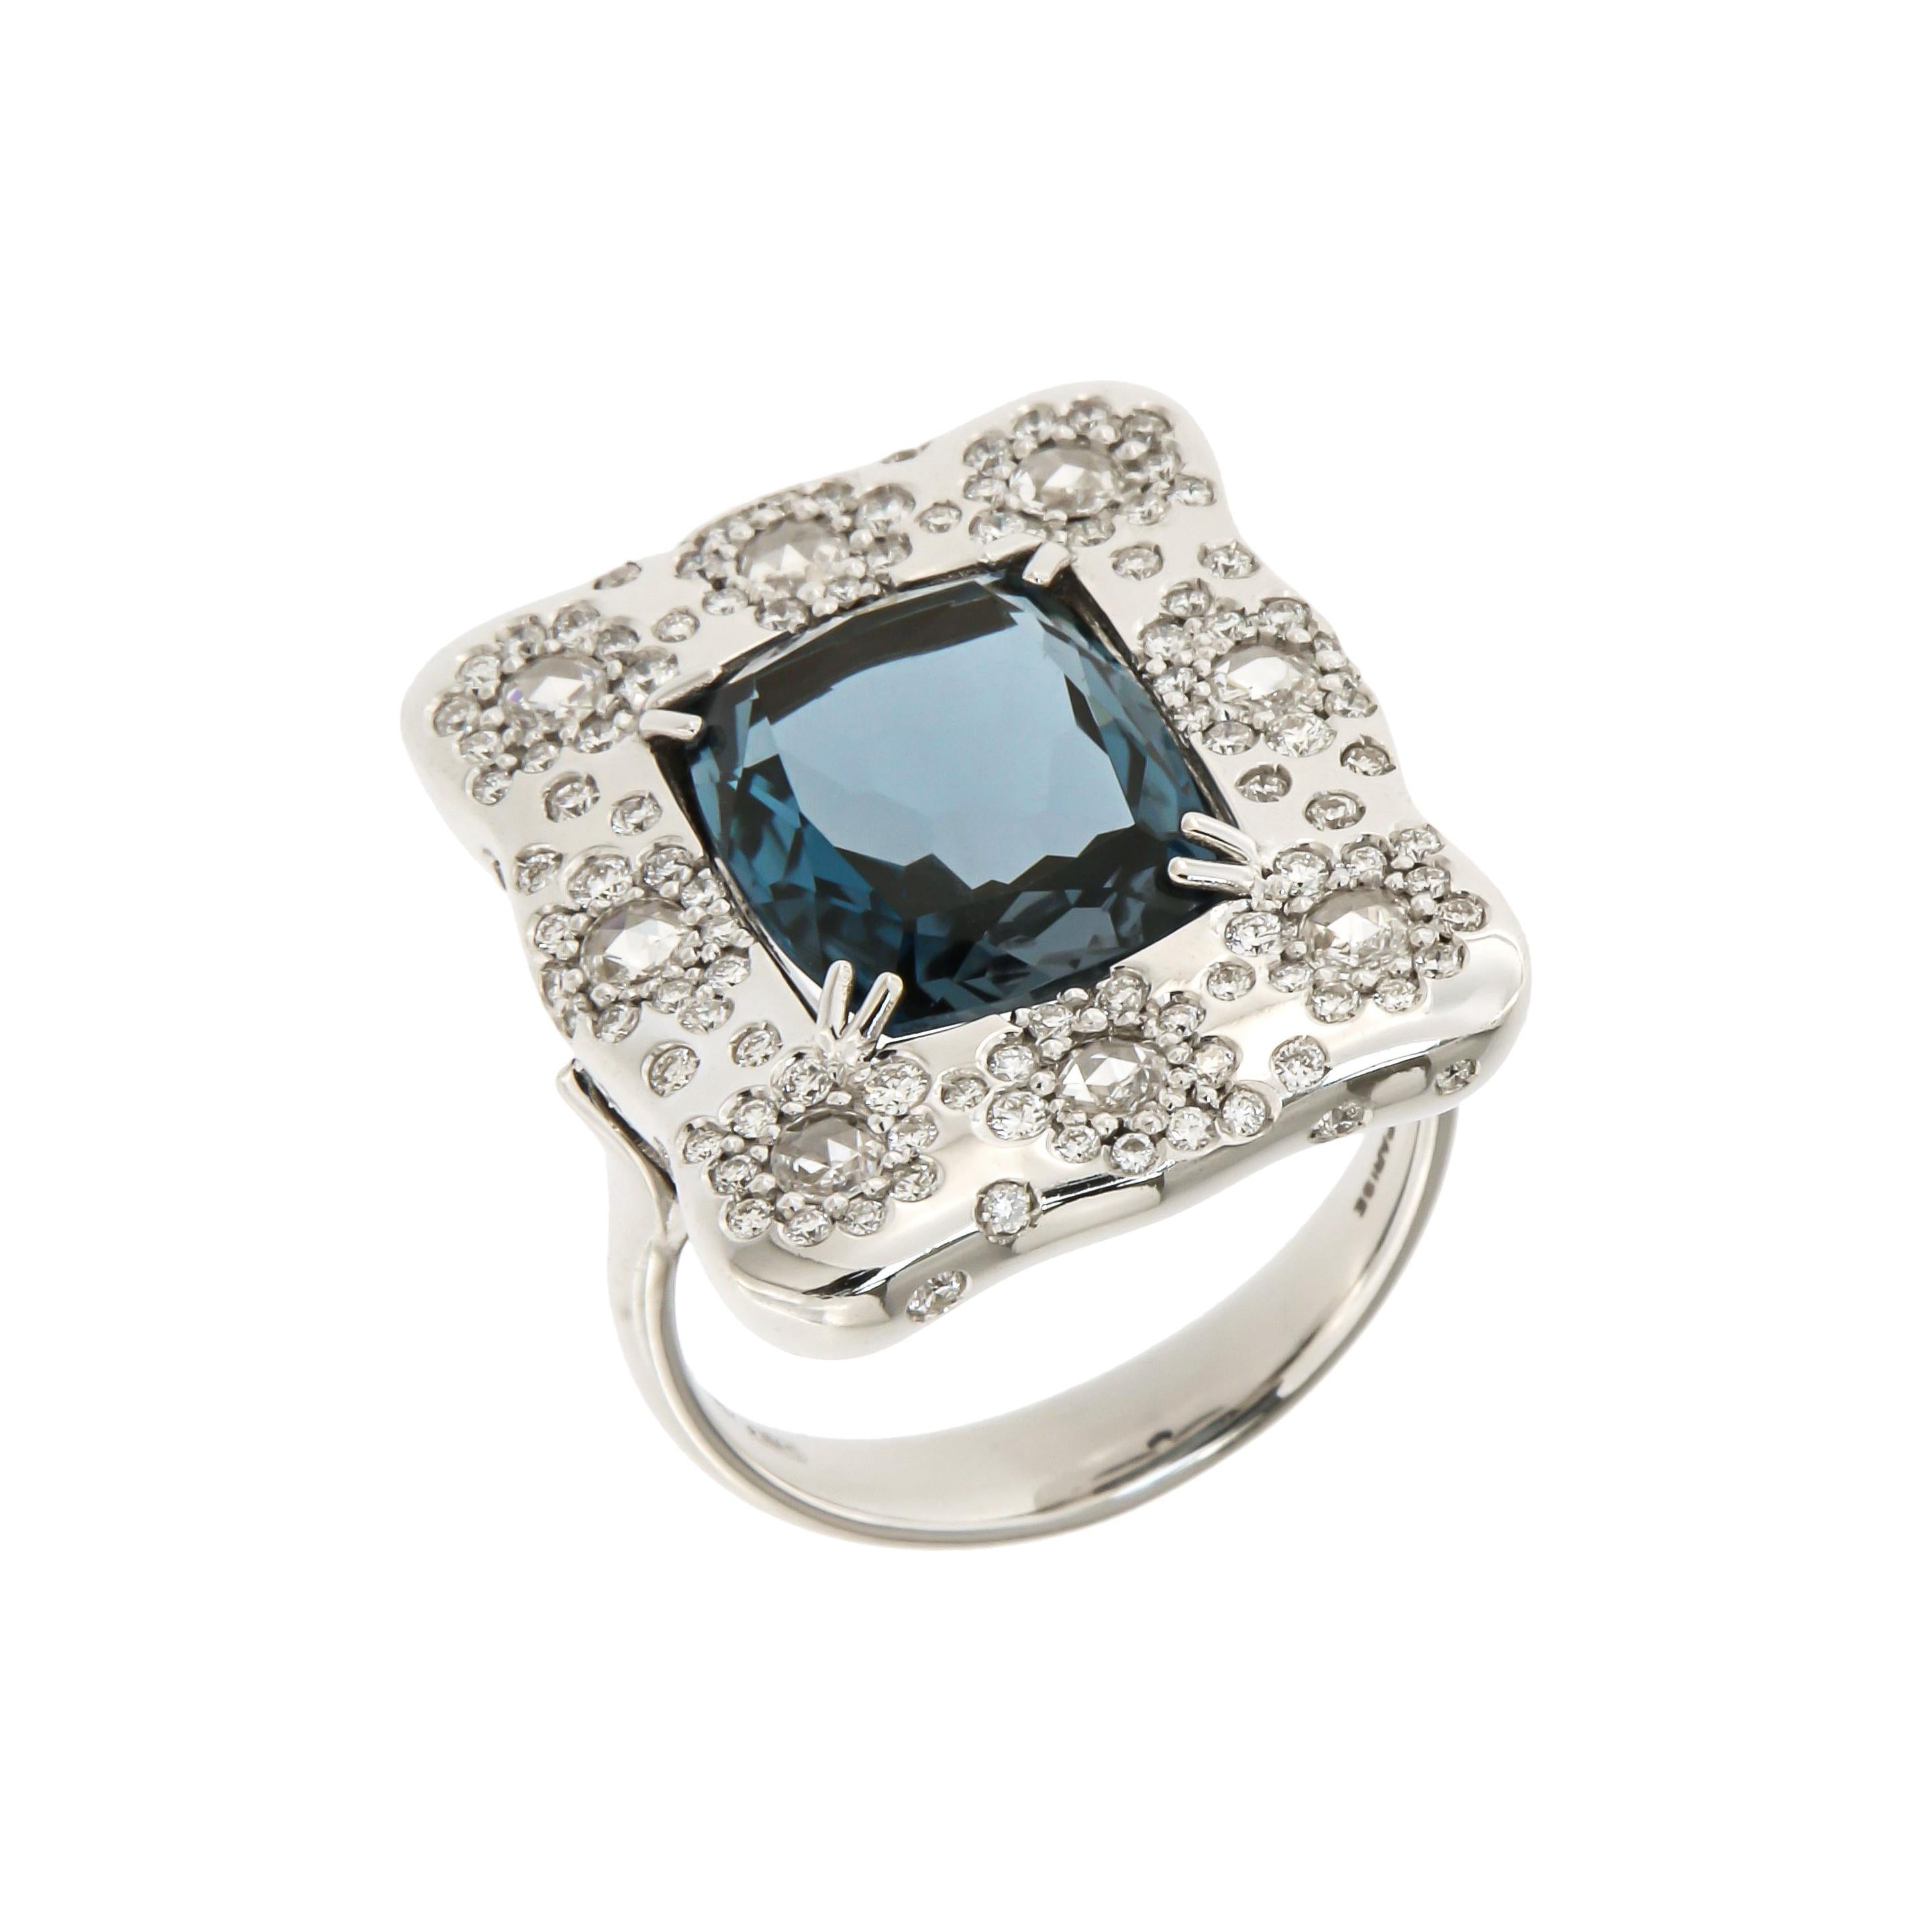 Italian Breathtaking 18k London Blue Topaz Diamonds White Gold Ring for Her